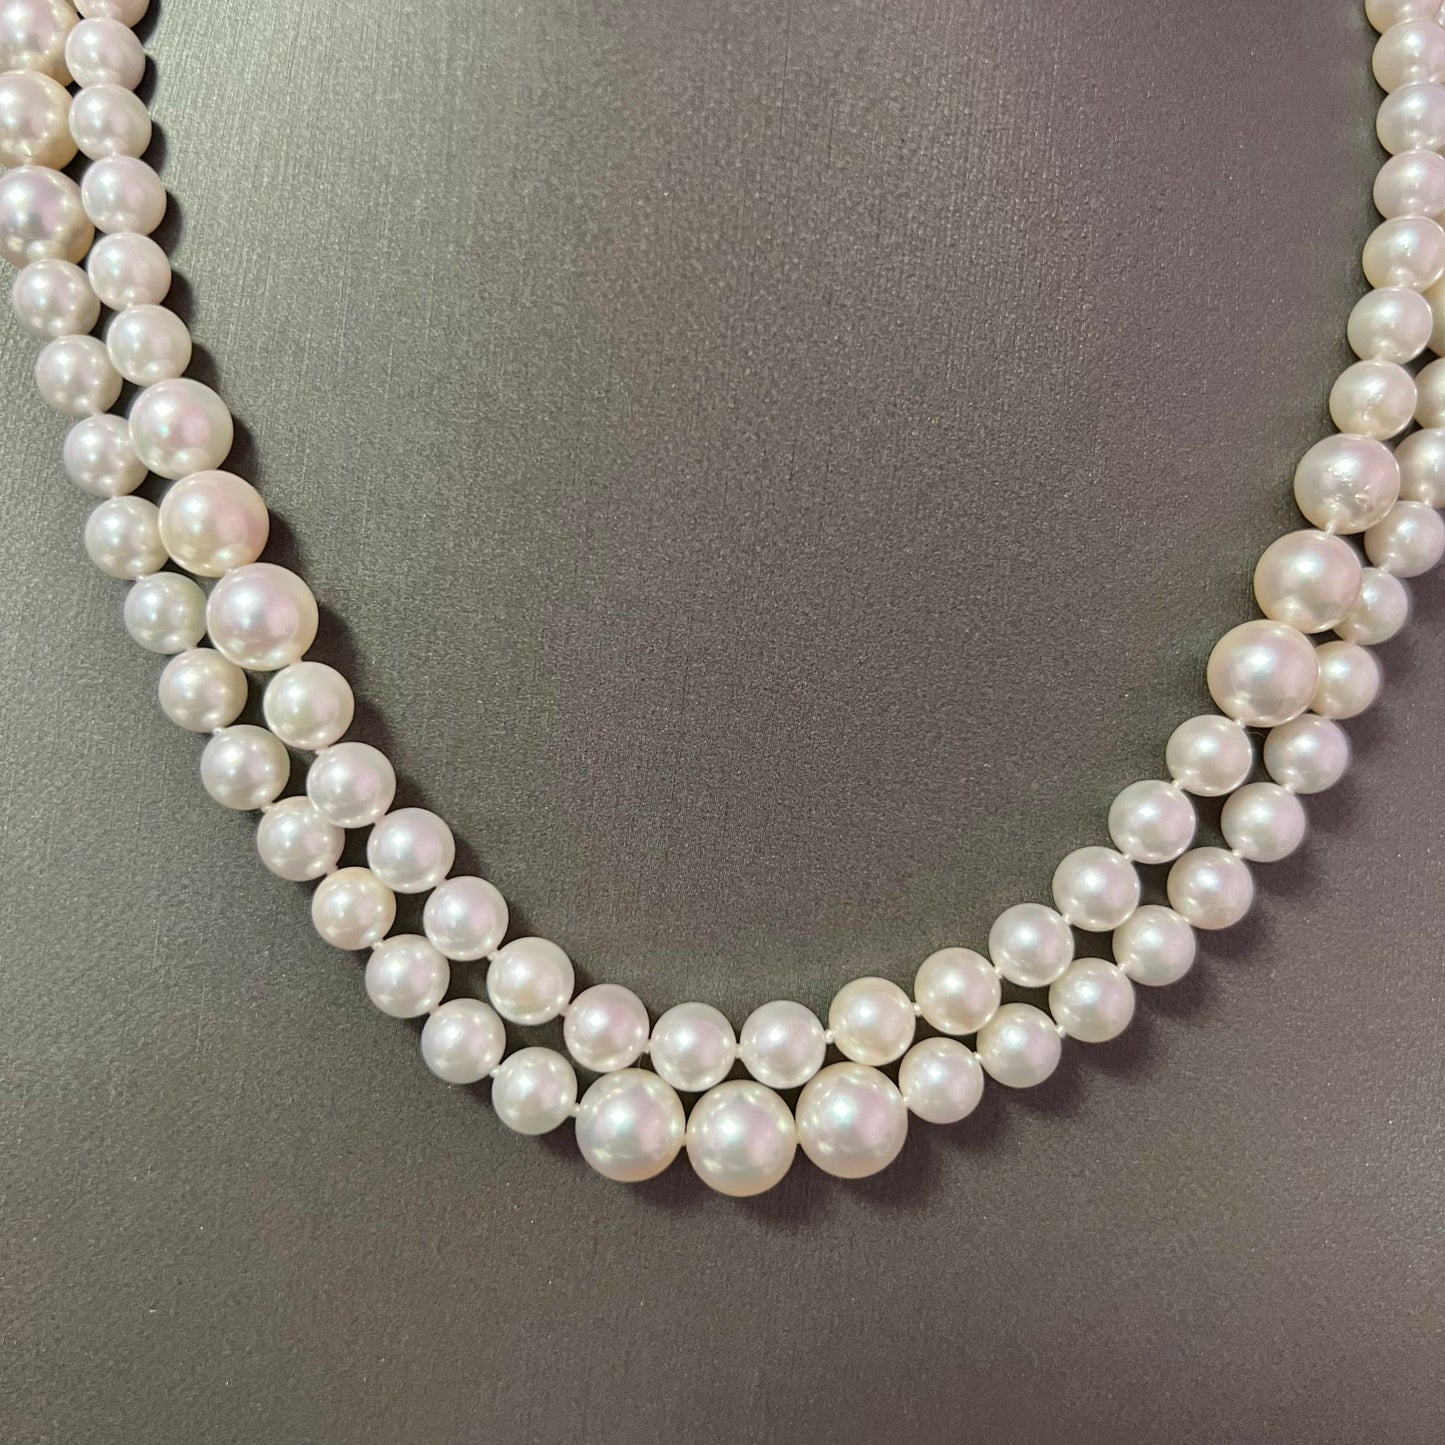 Akoya Pearl Diamond Necklace 16-17" 14k W Gold 0.66 TCW Certified $9,790 216993 - Certified Fine Jewelry